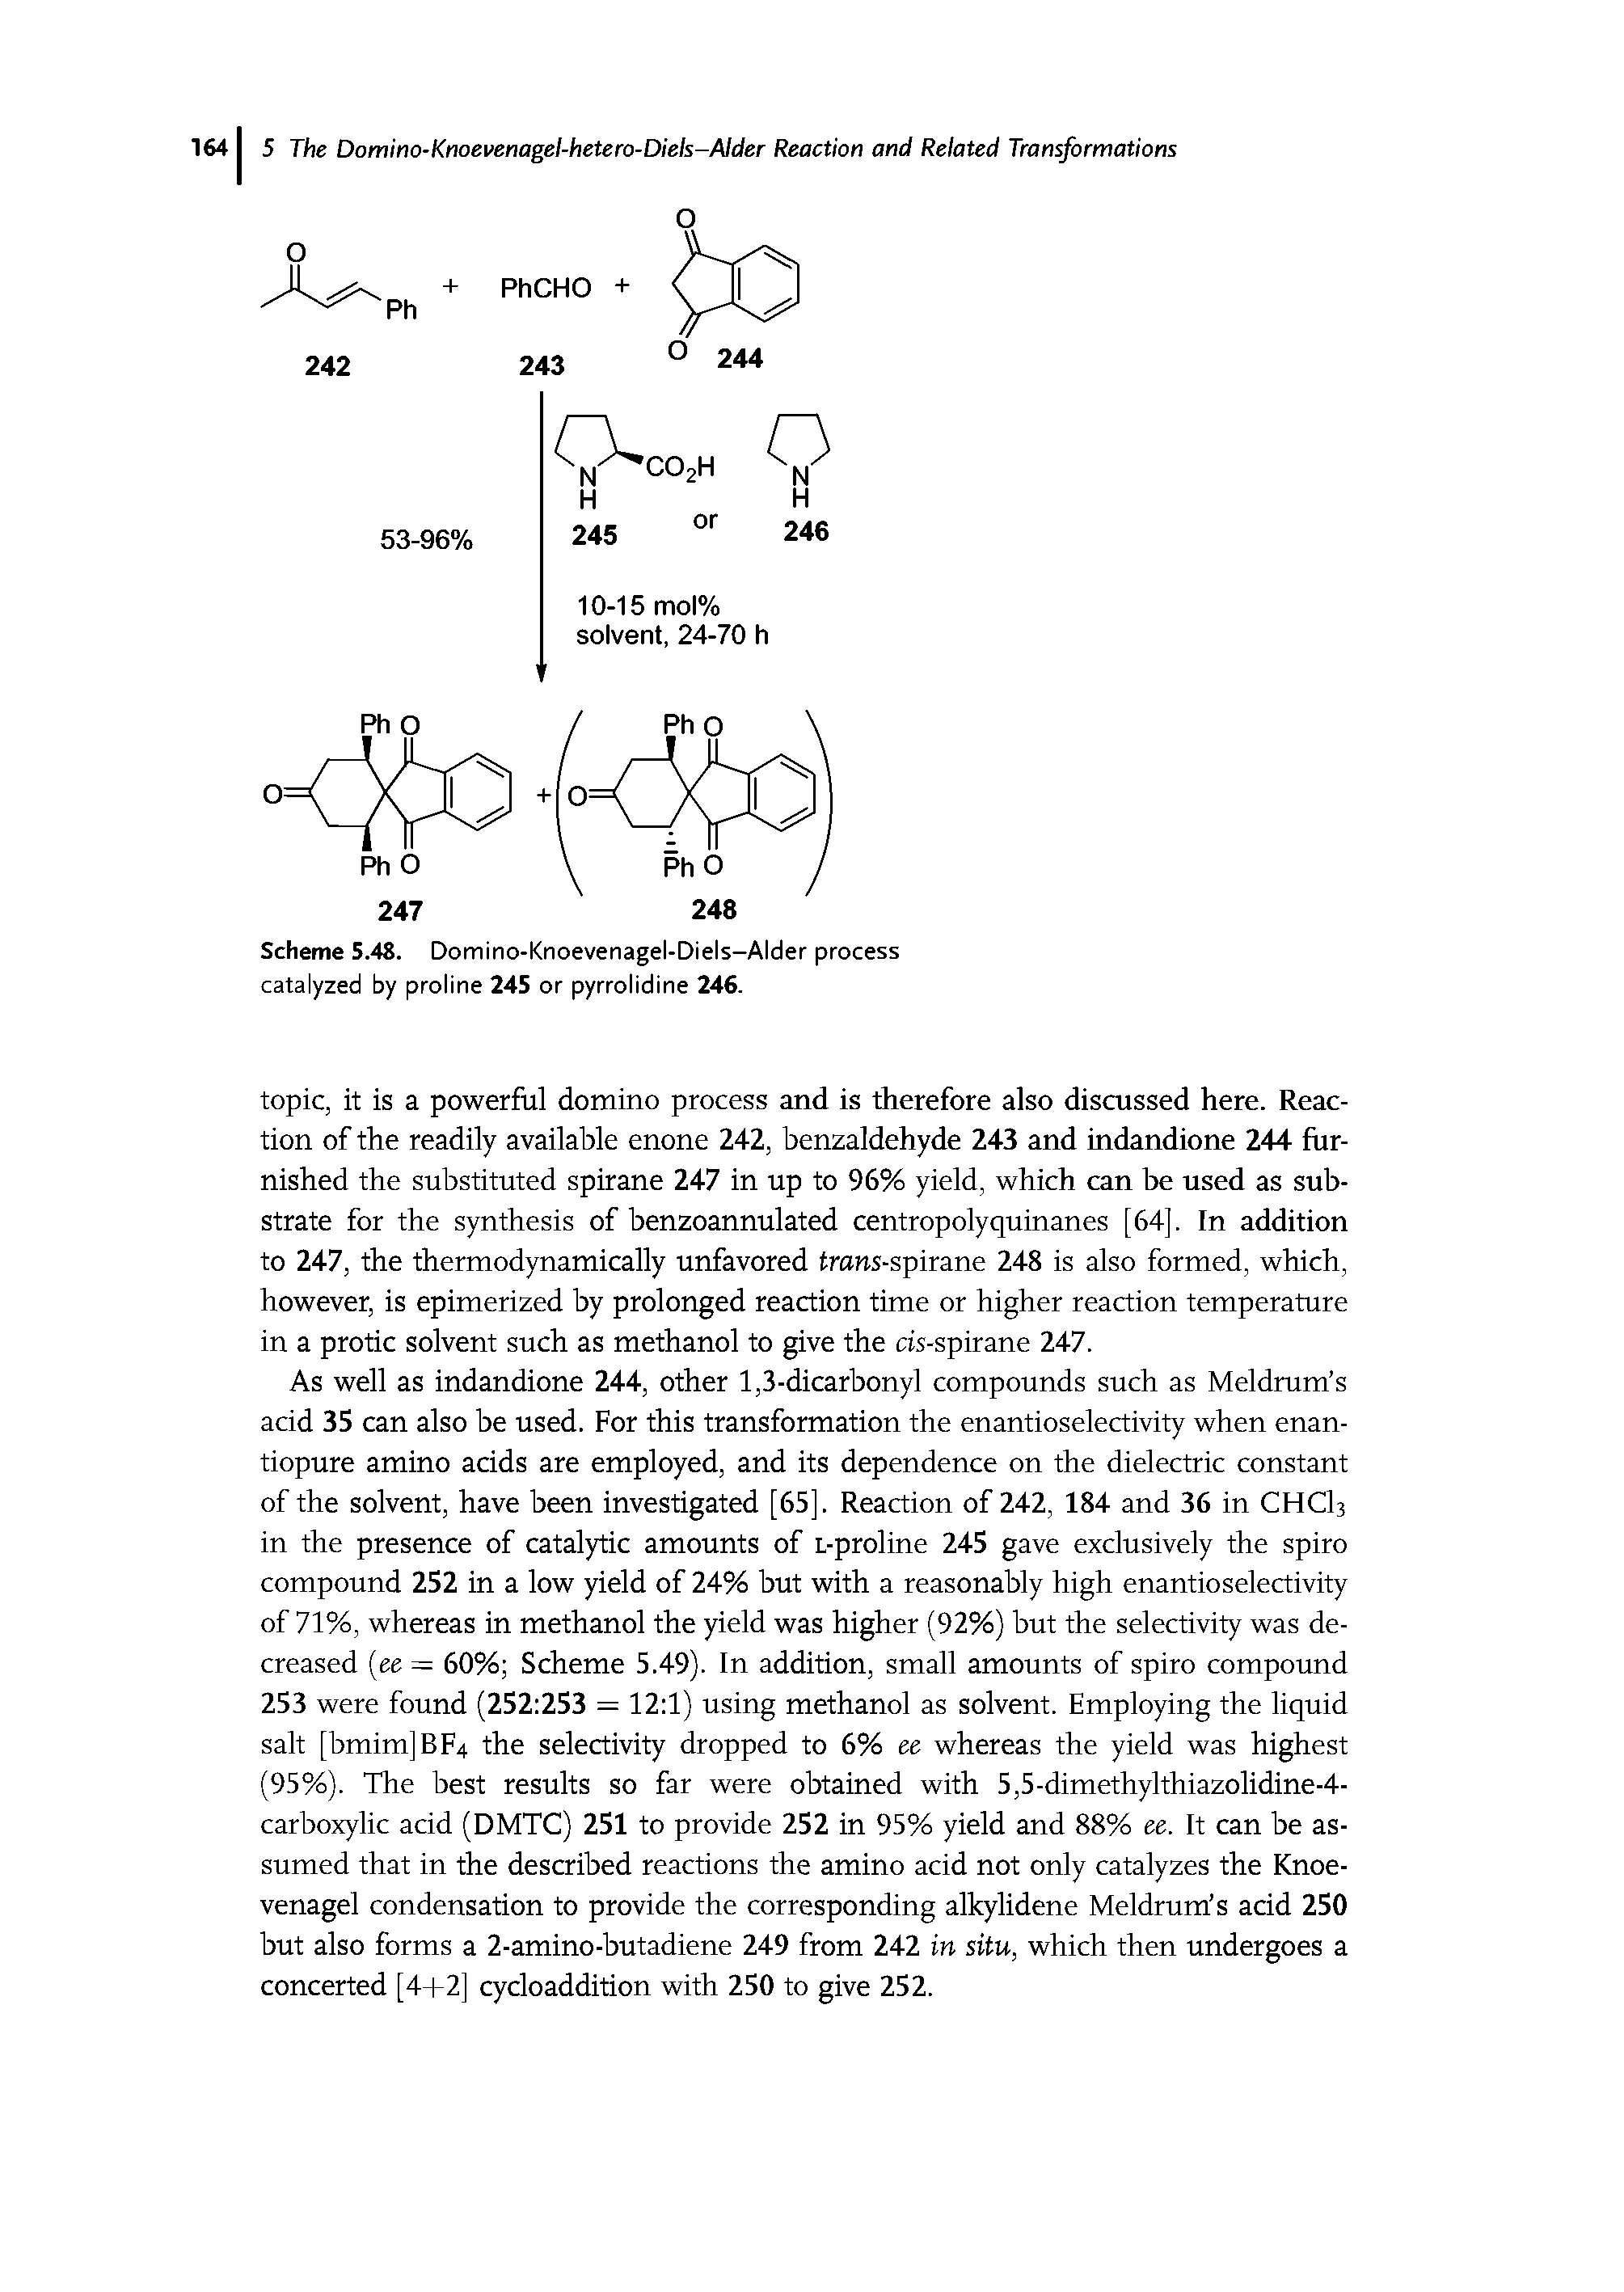 Scheme 5.48. Domino-Knoevenagel-Diels-Alder process catalyzed by proline 245 or pyrrolidine 246.